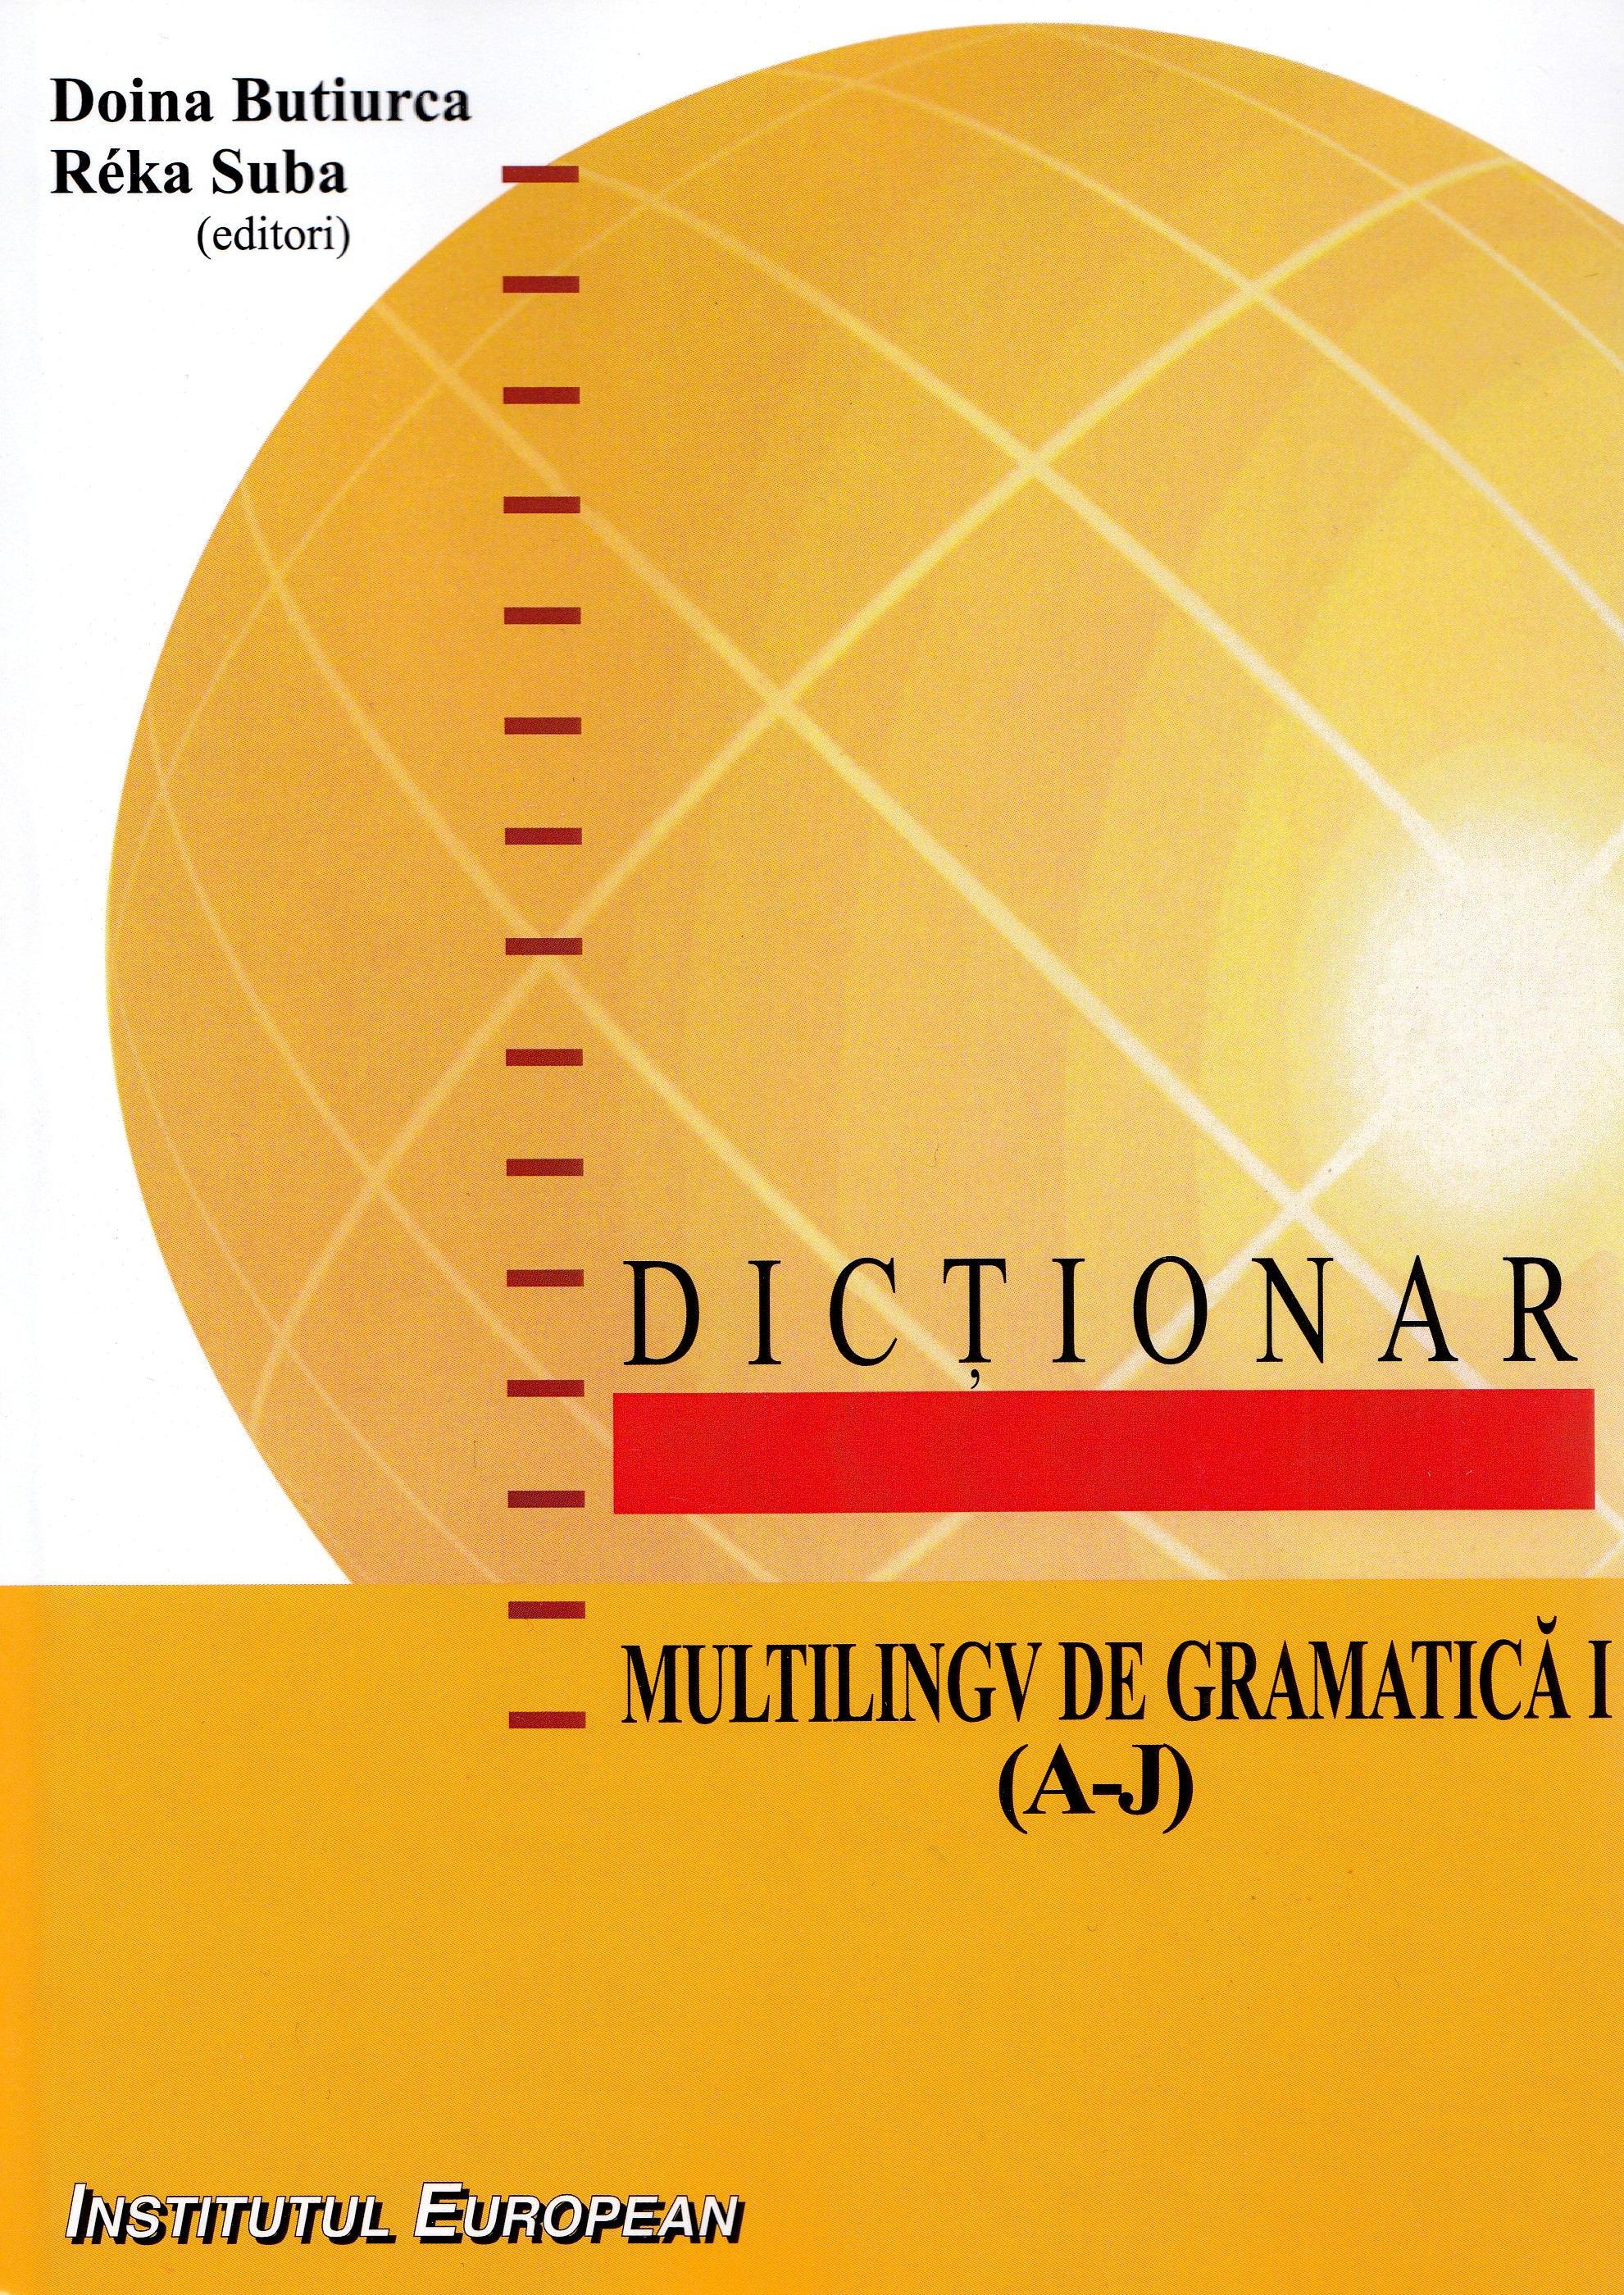 Dictionar multilingv de gramatica Vol.1 (A-J) - Doina Butiurca, Reka Suba